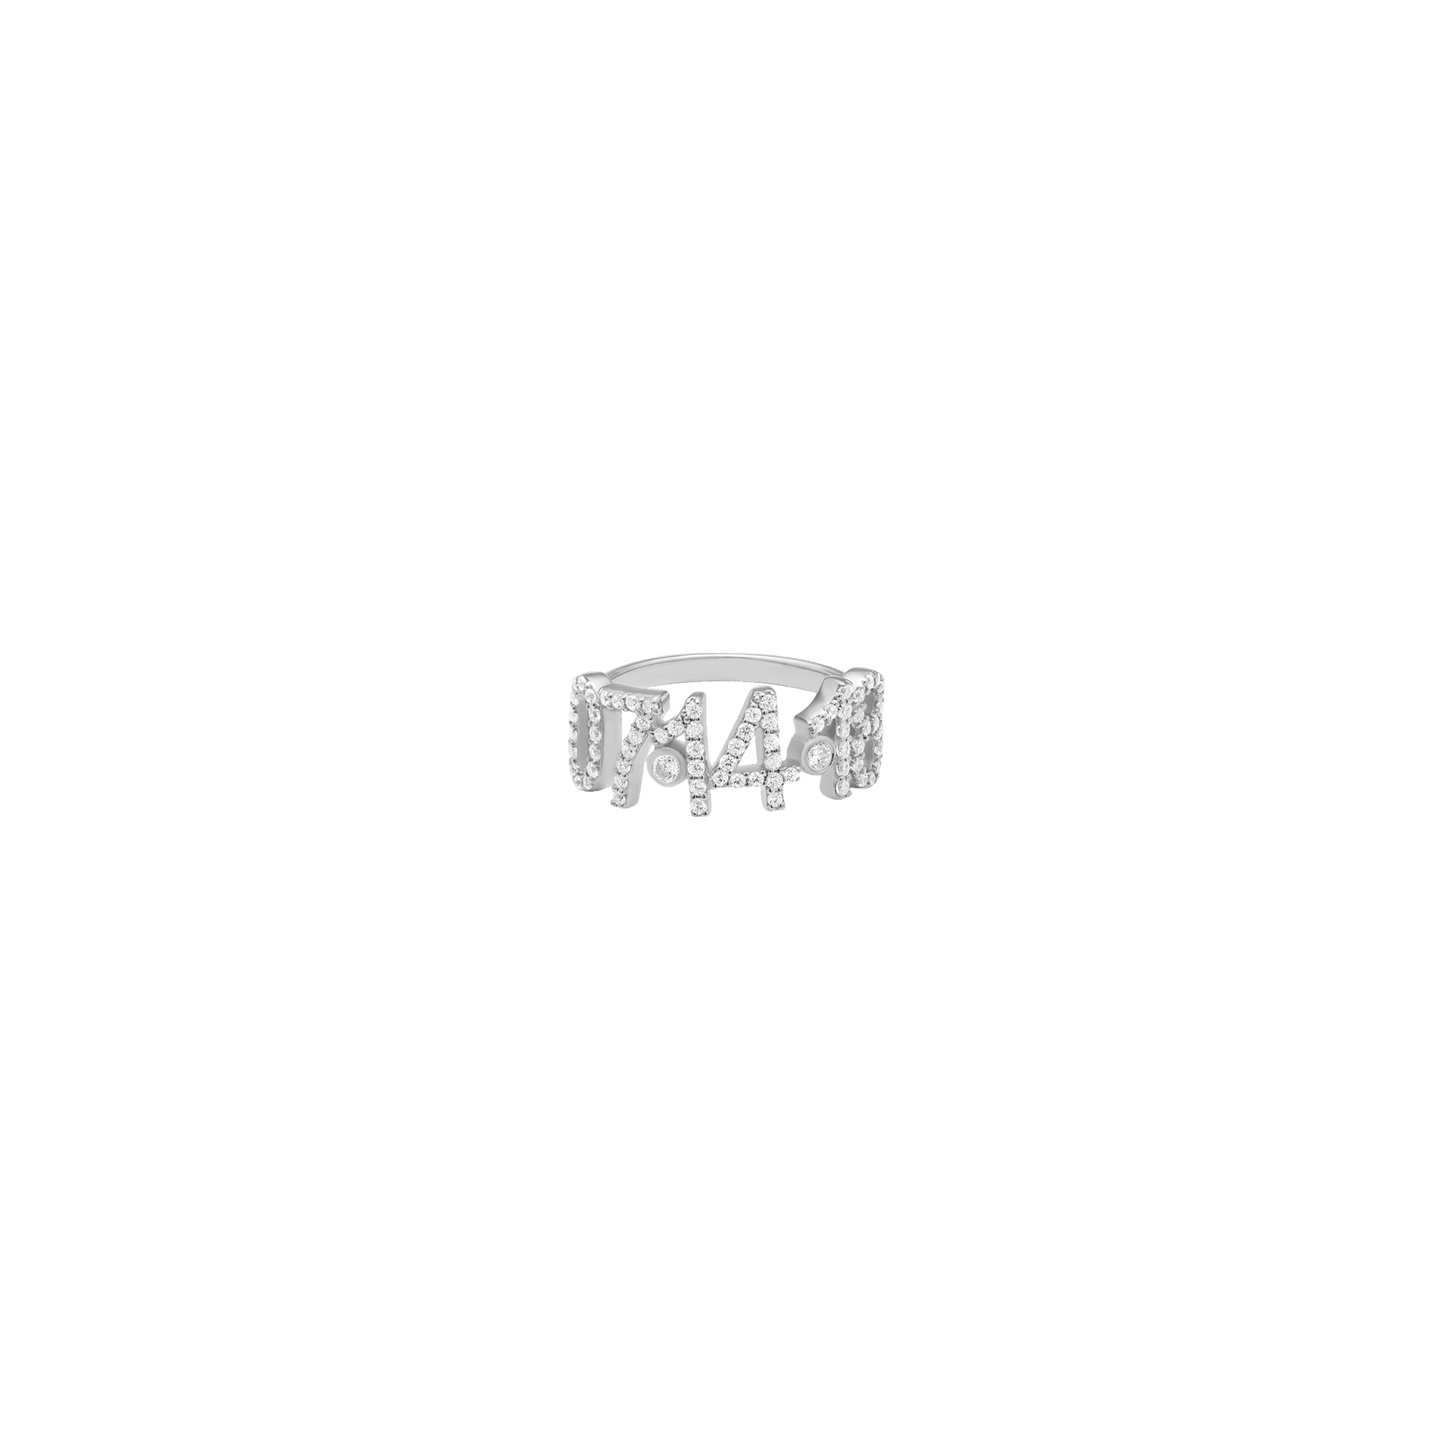 Birthdate Paved Diamond Ring - 14K White Gold Rings magal-dev US 4 